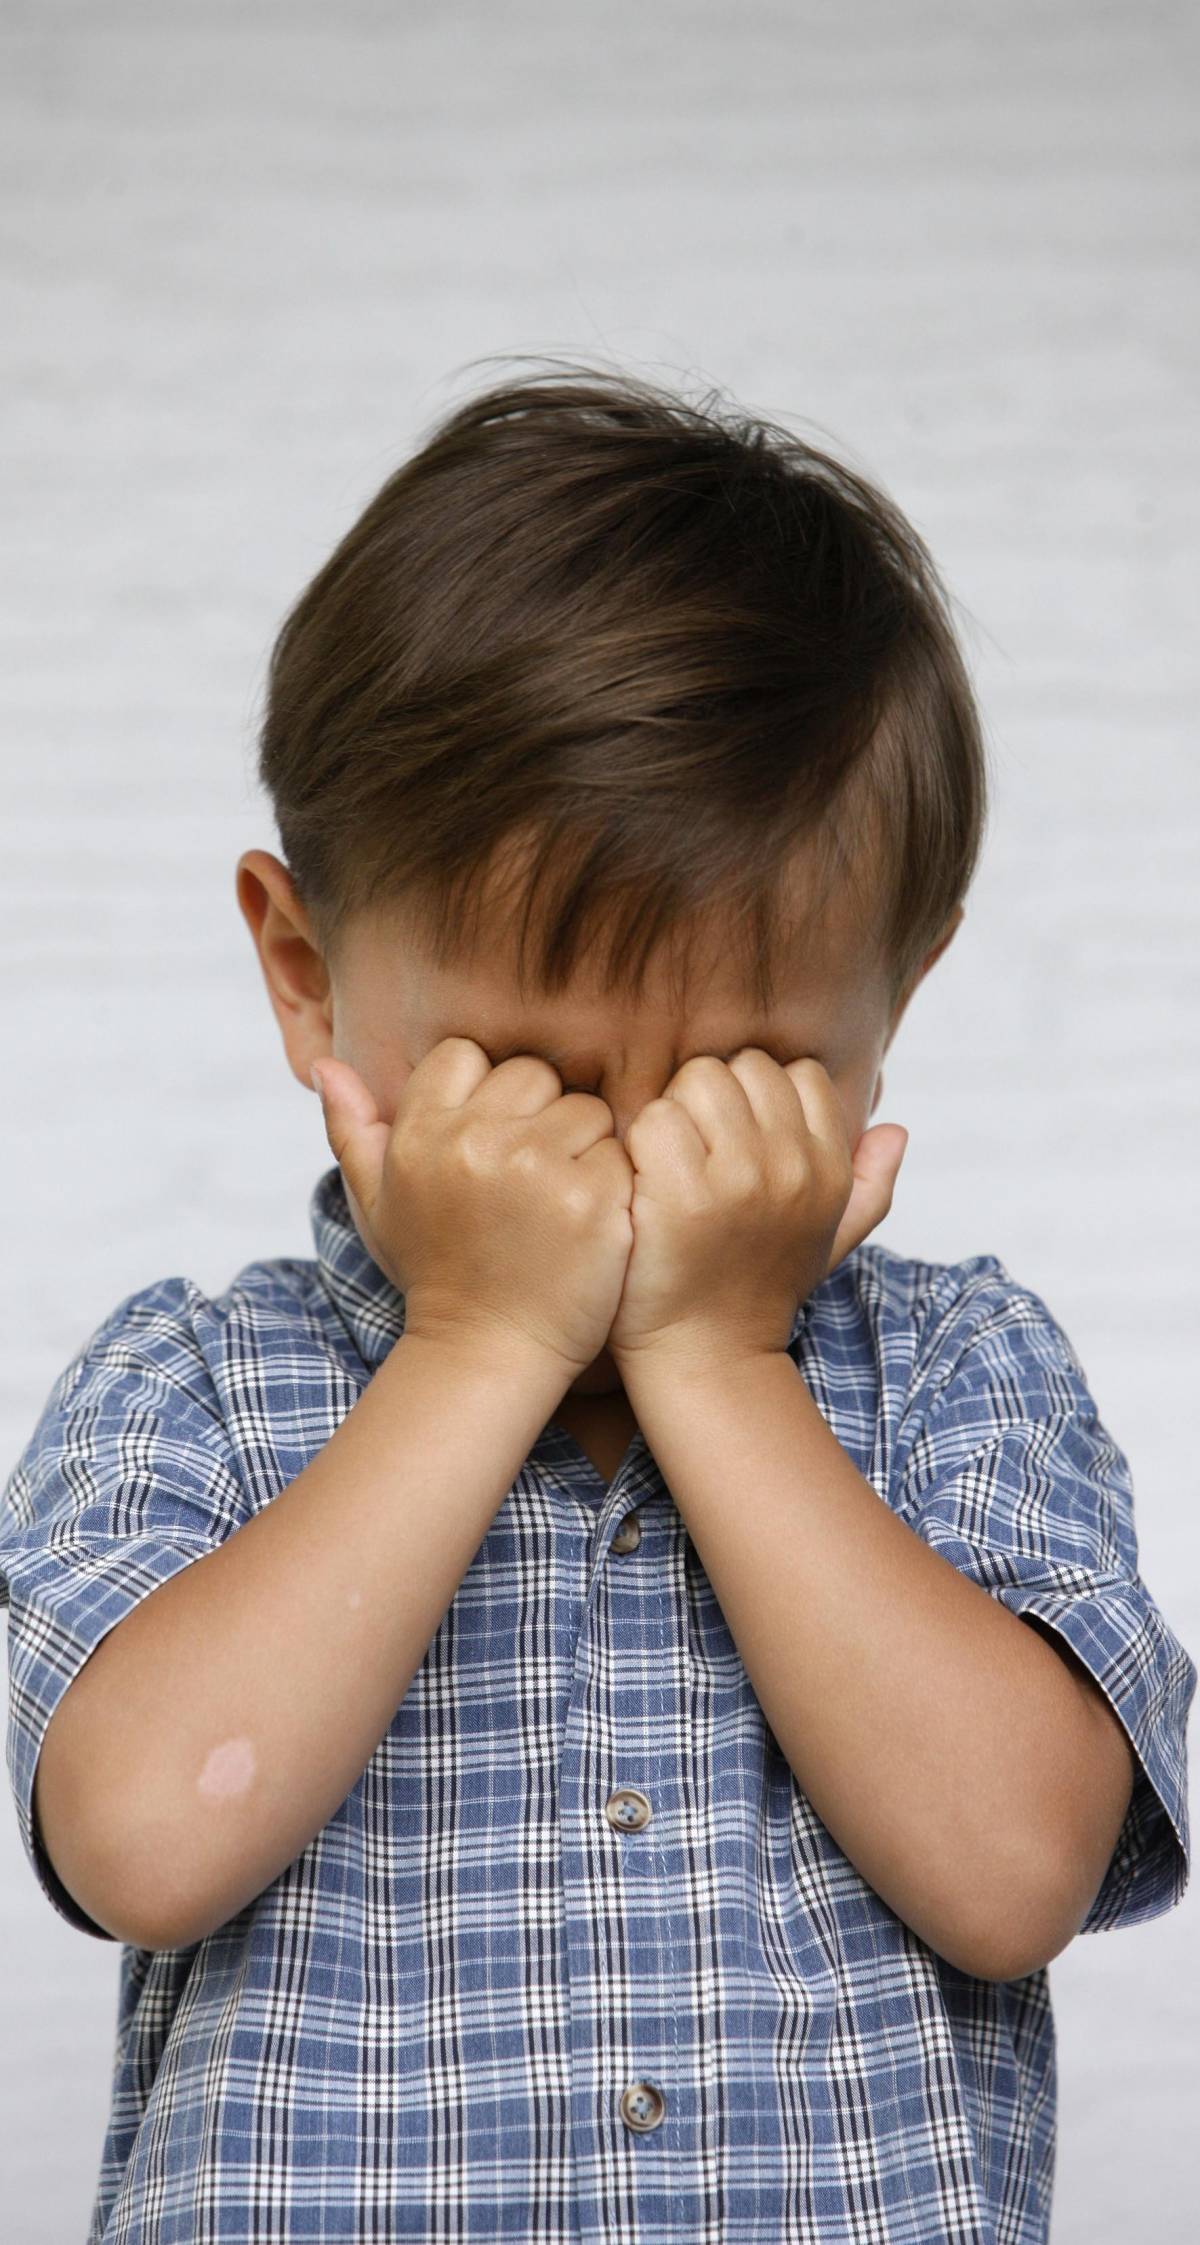 Cosa bisogna fare  se il bambino  ha sempre mal di testa?